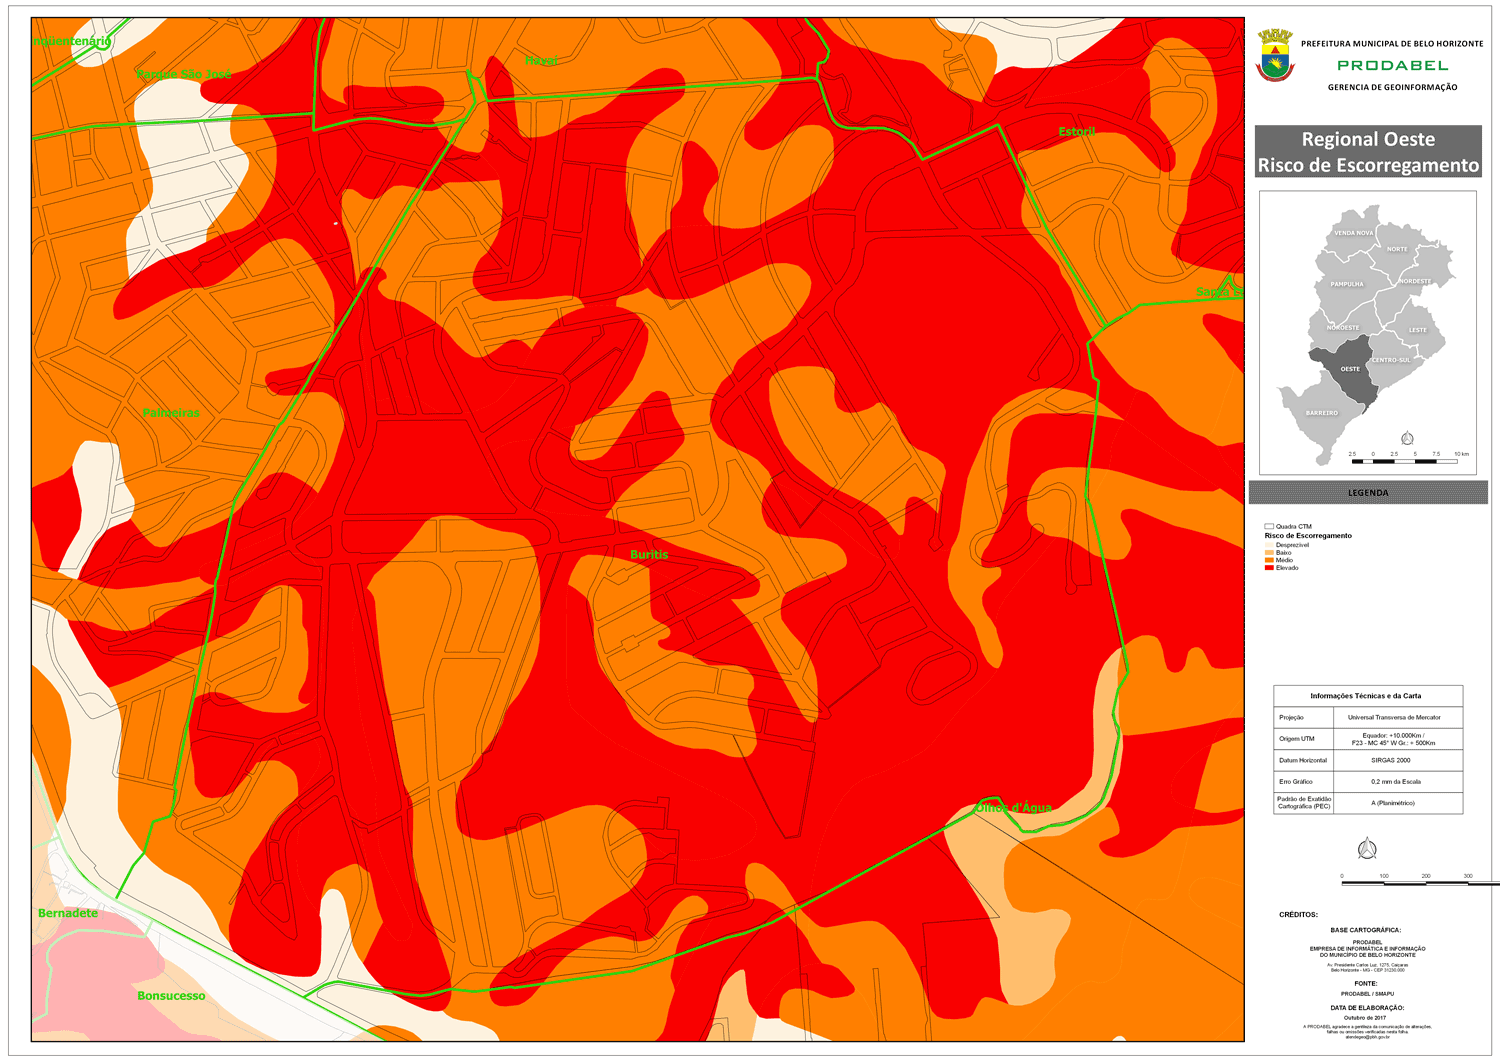 Mapa de Risco Geológico no Buritis. Fonte: Prodabel.